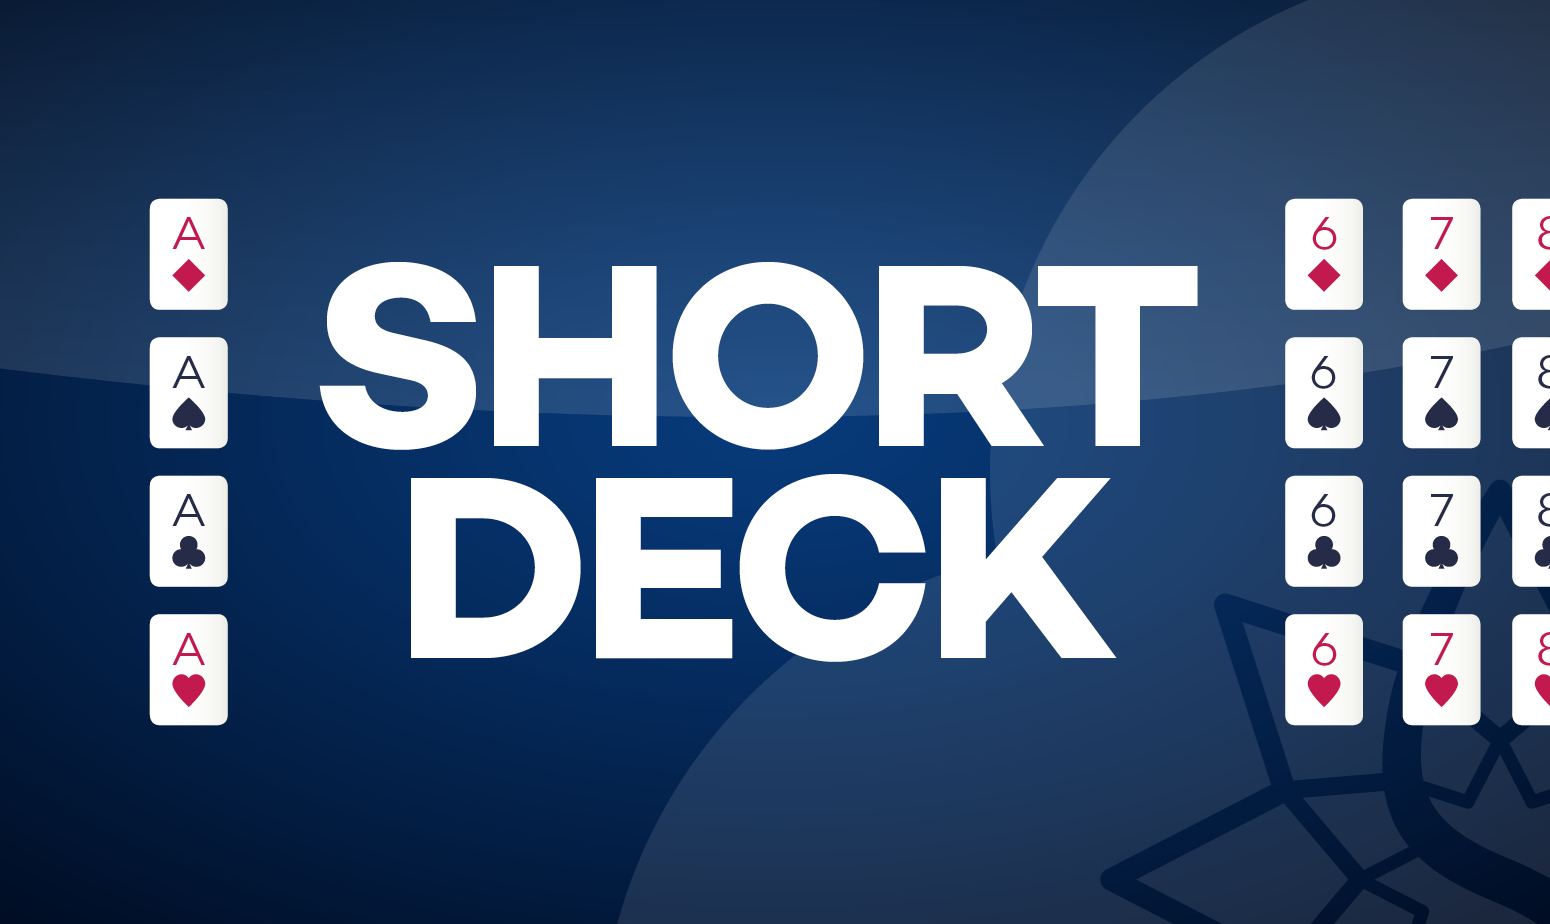 Short Deck